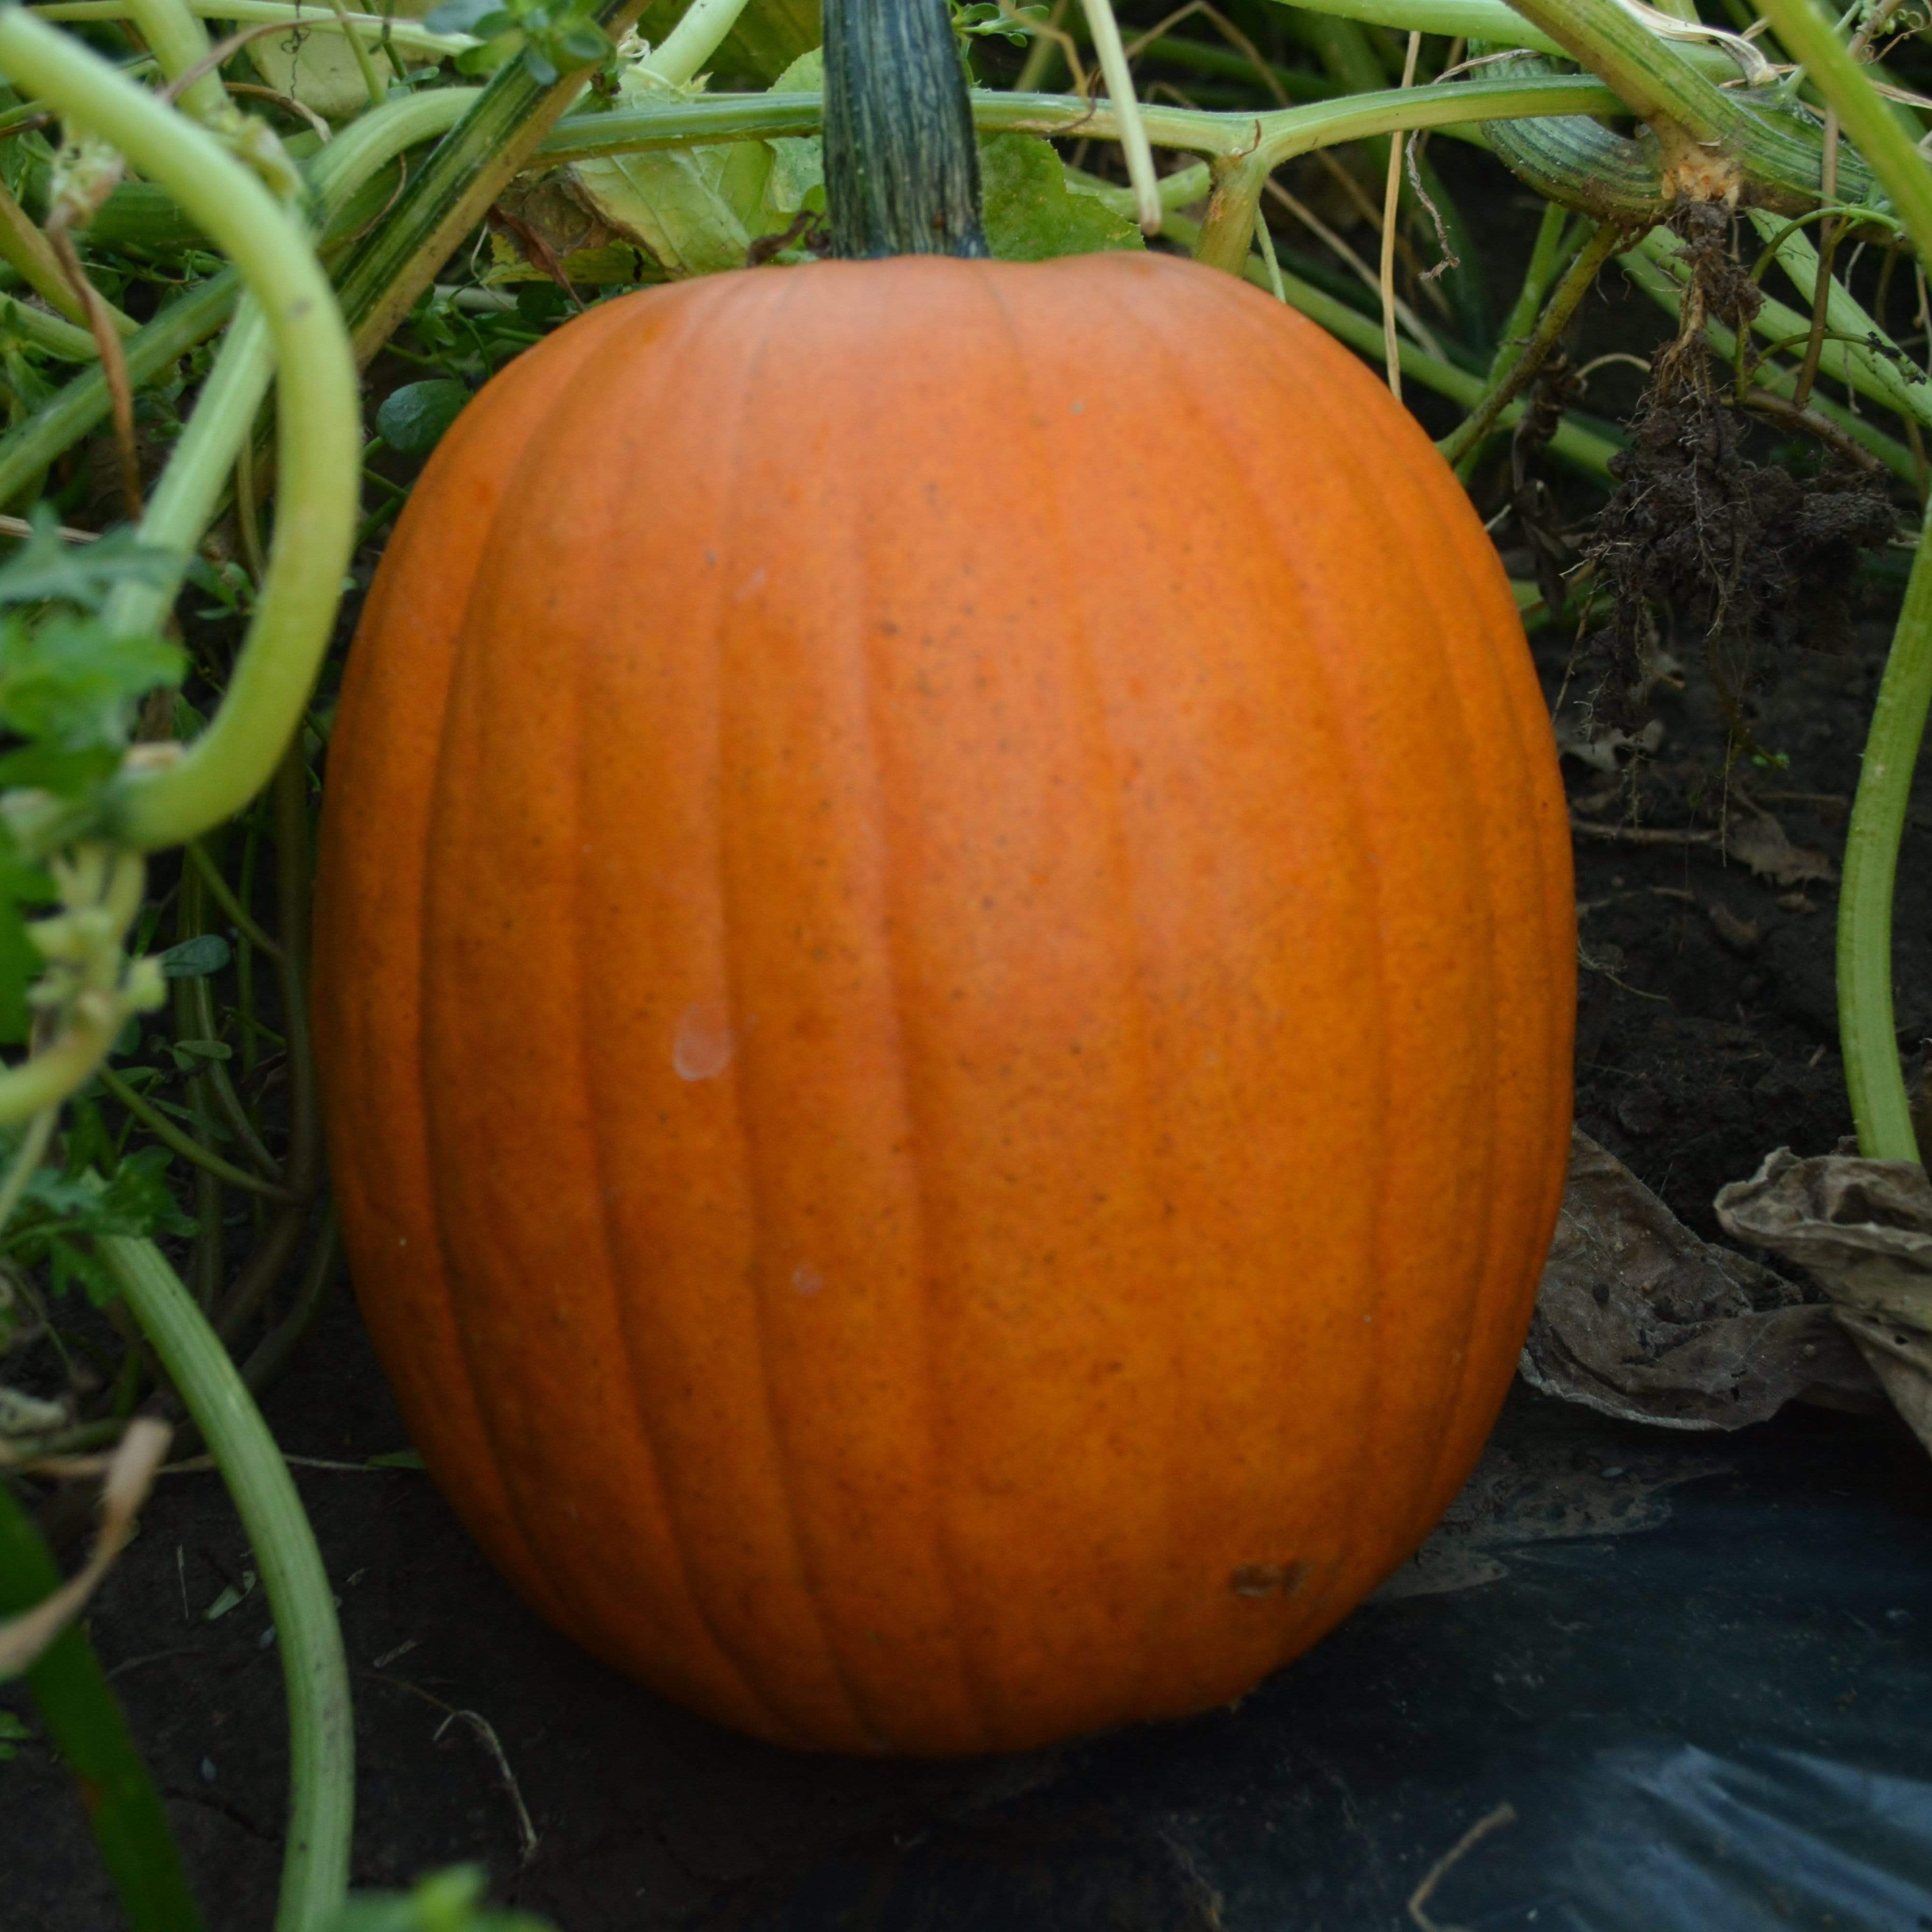 Jack-O-Lantern Pumpkin growing at home